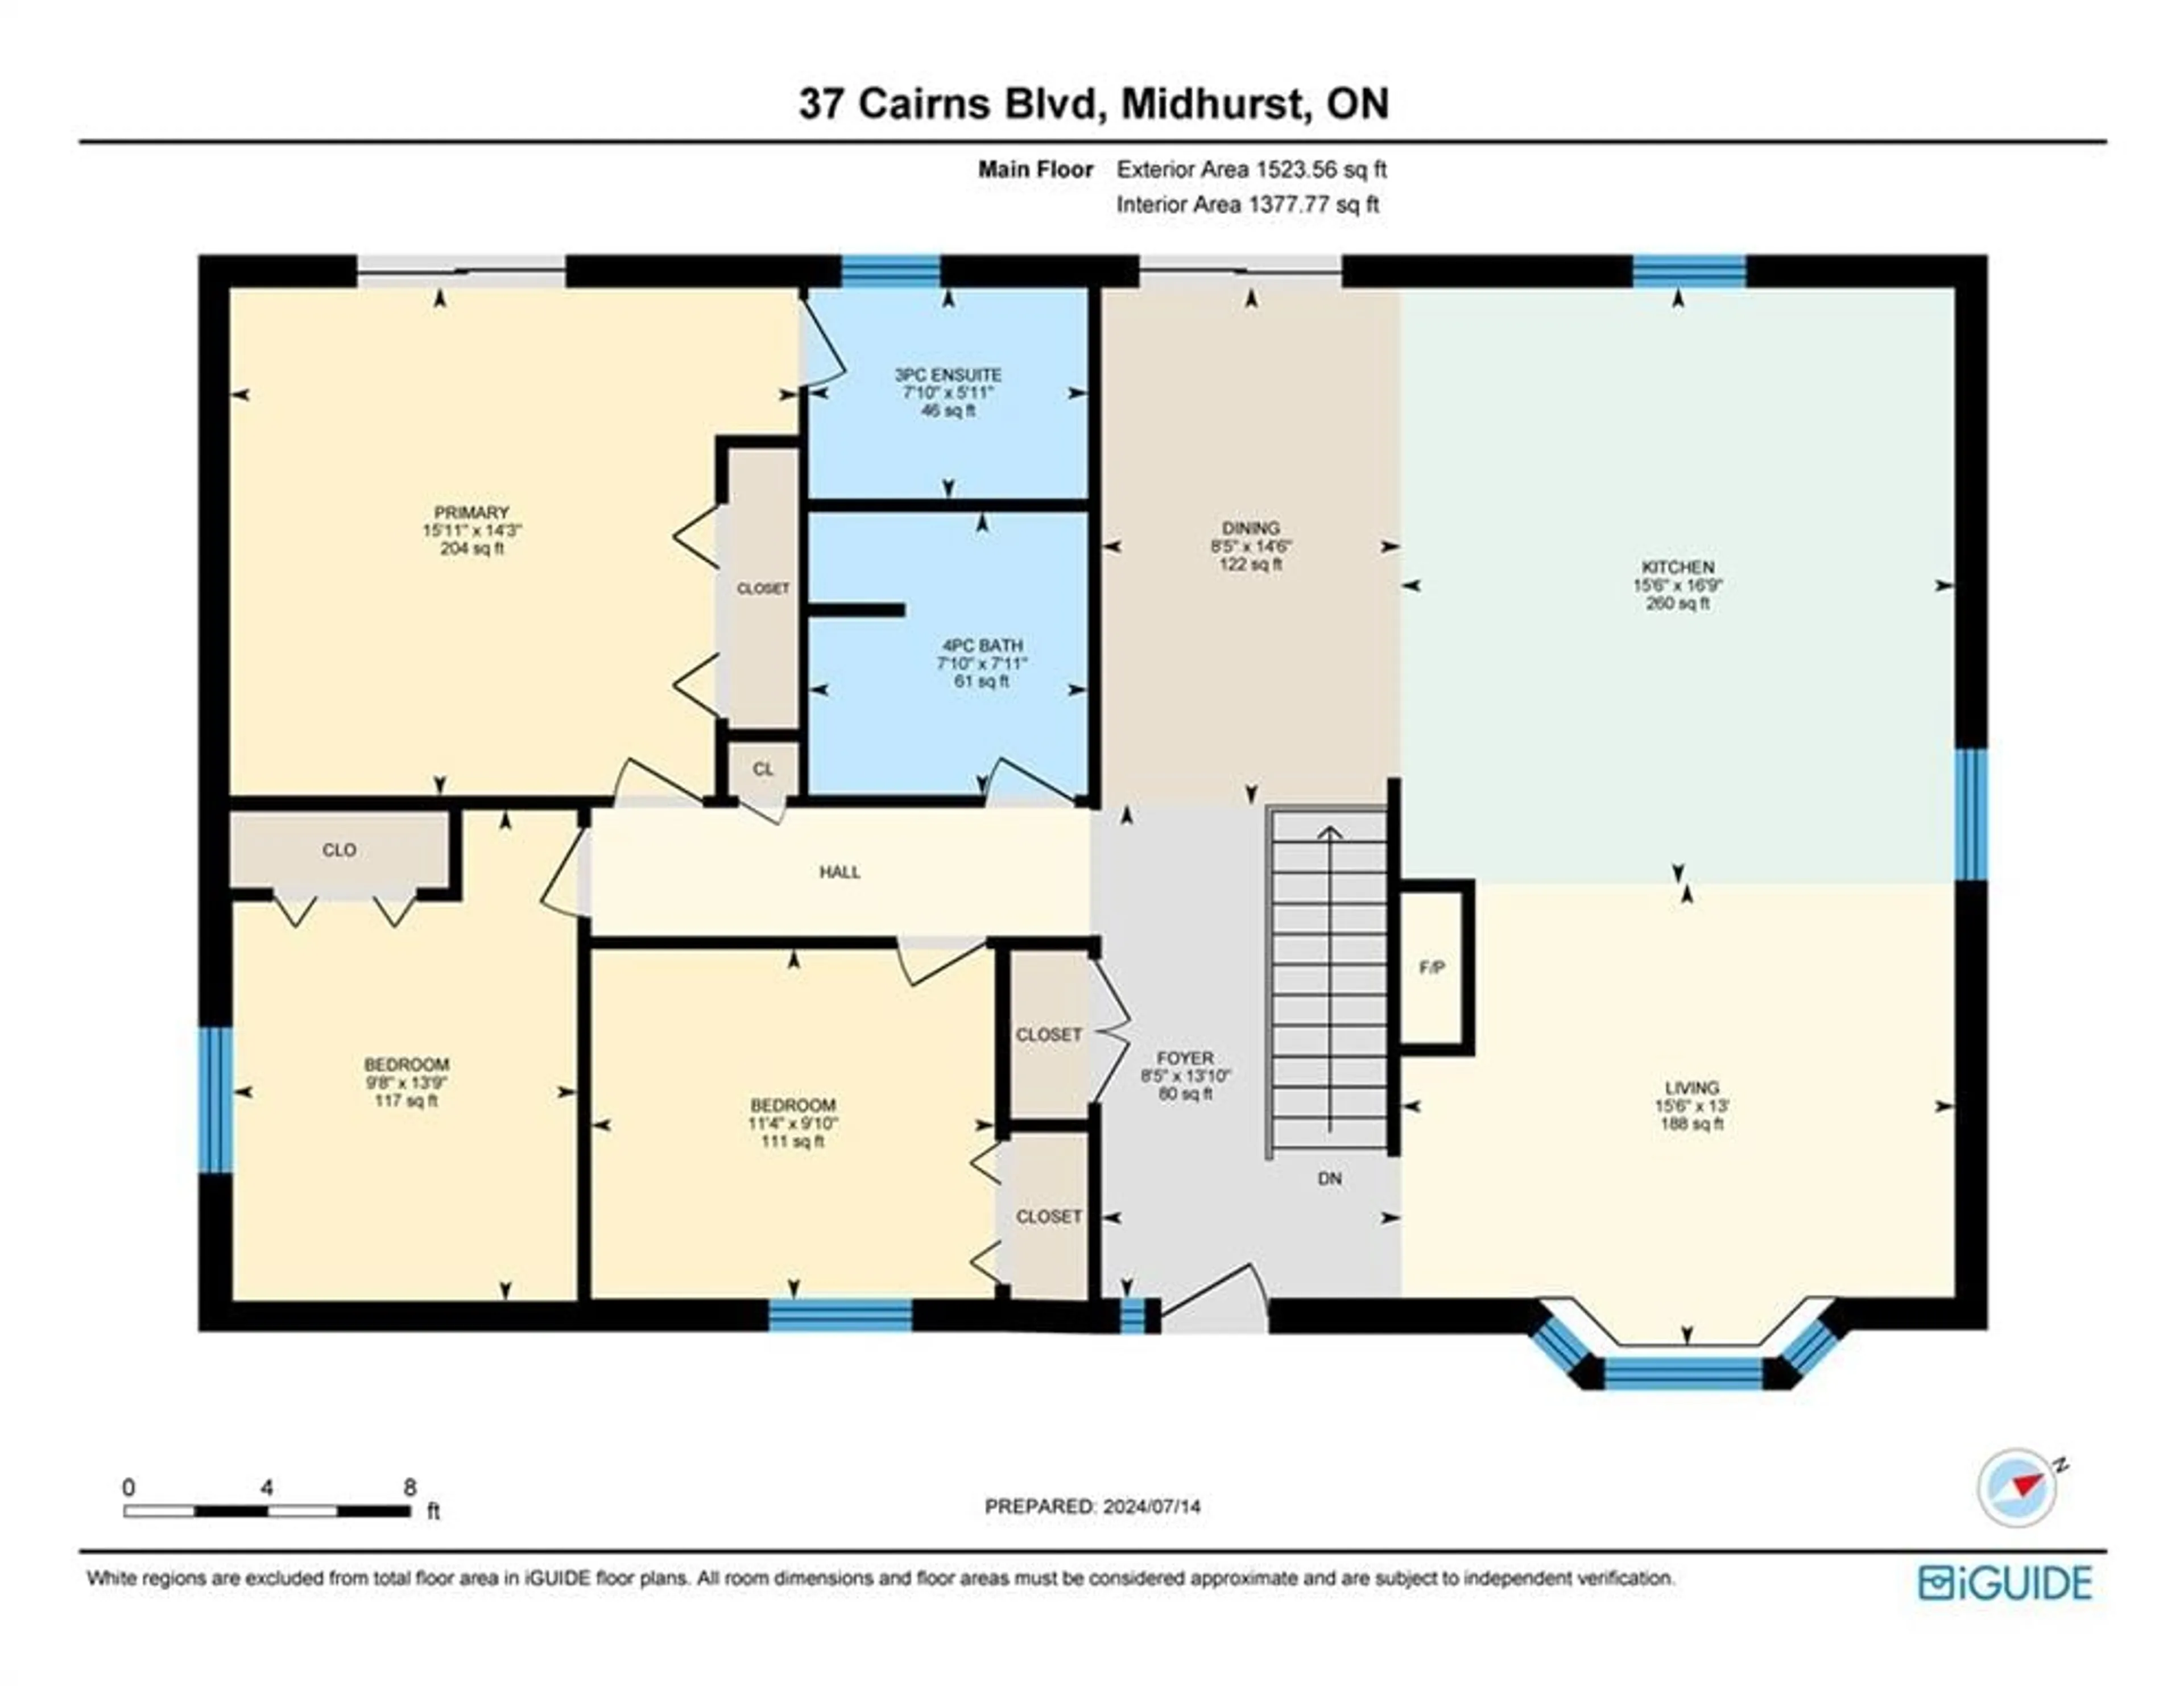 Floor plan for 37 Cairns Blvd, Midhurst Ontario L9X 0N8